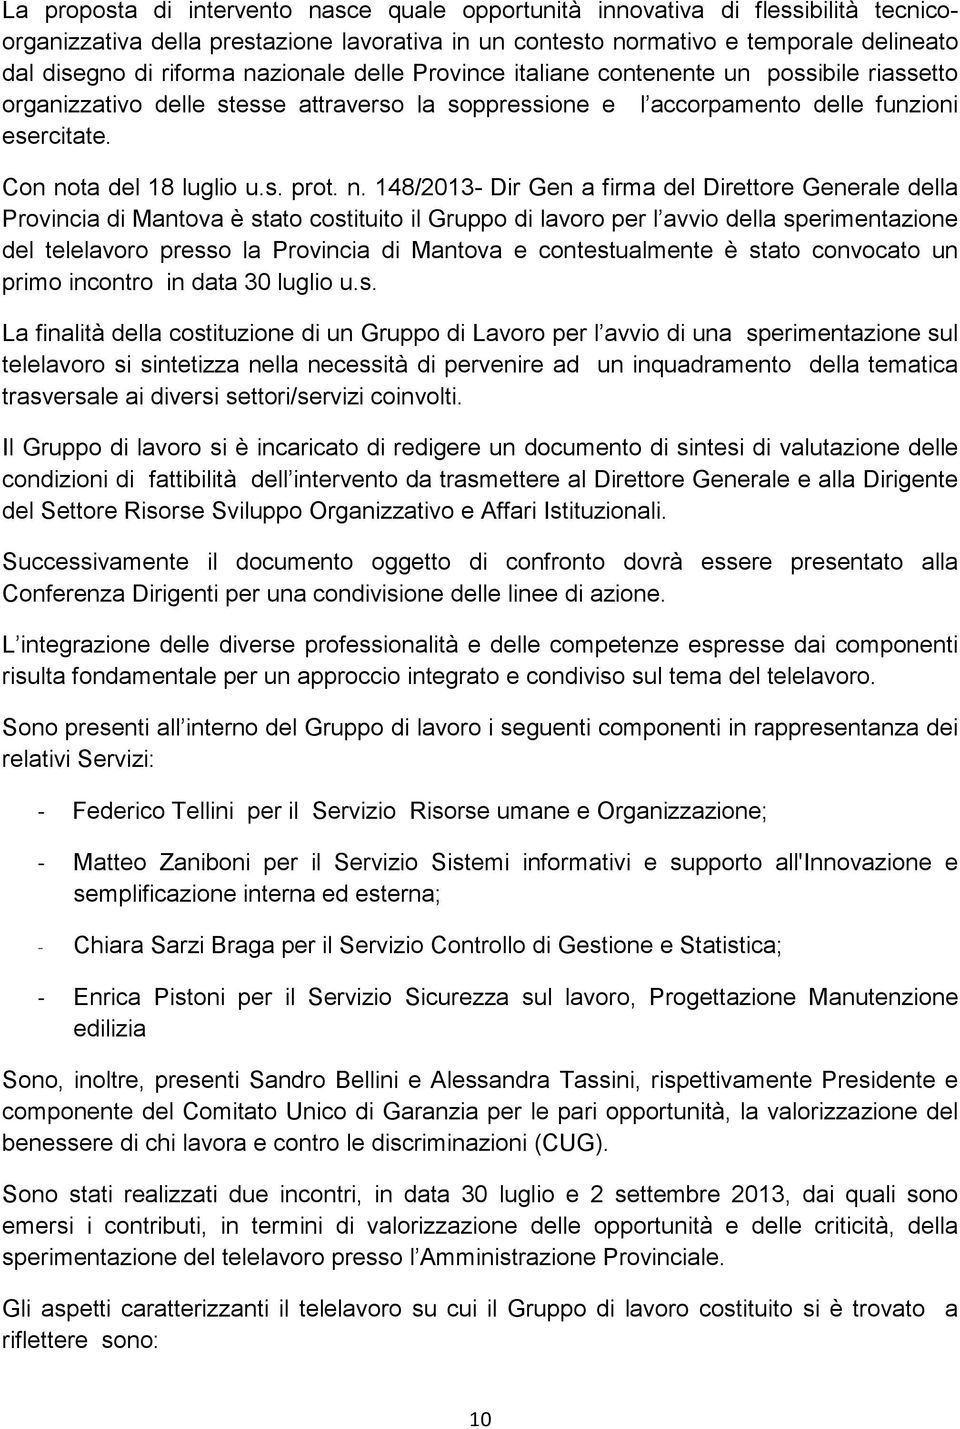 n. 148/2013- Dir Gen a firma del Direttore Generale della Provincia di Mantova è stato costituito il Gruppo di lavoro per l avvio della sperimentazione del telelavoro presso la Provincia di Mantova e